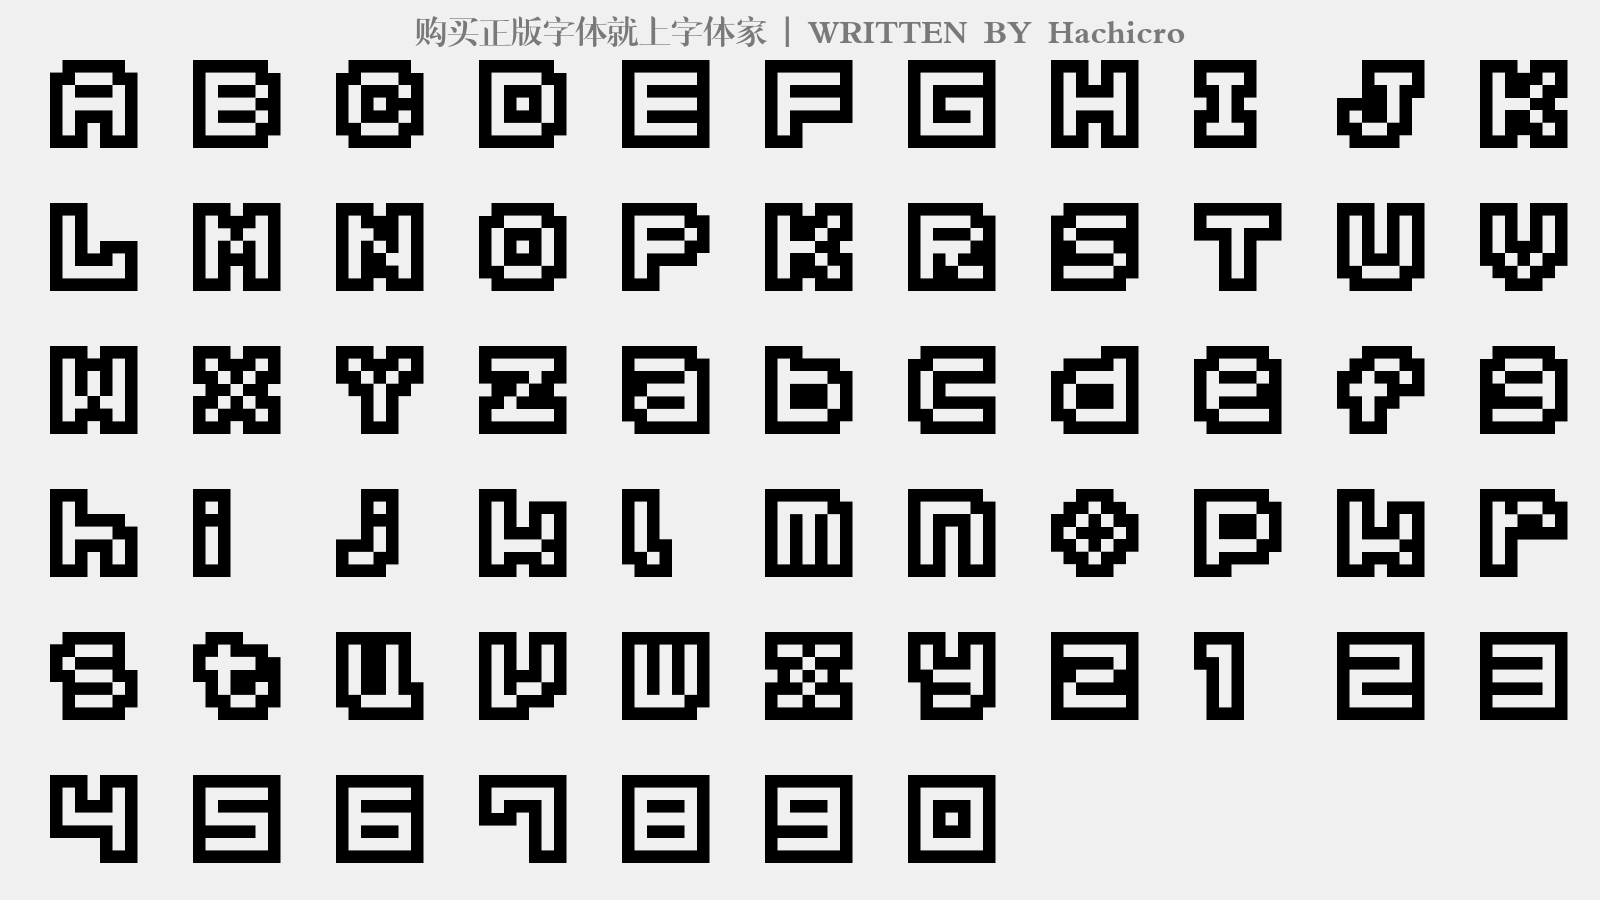 Hachicro - 大写字母/小写字母/数字